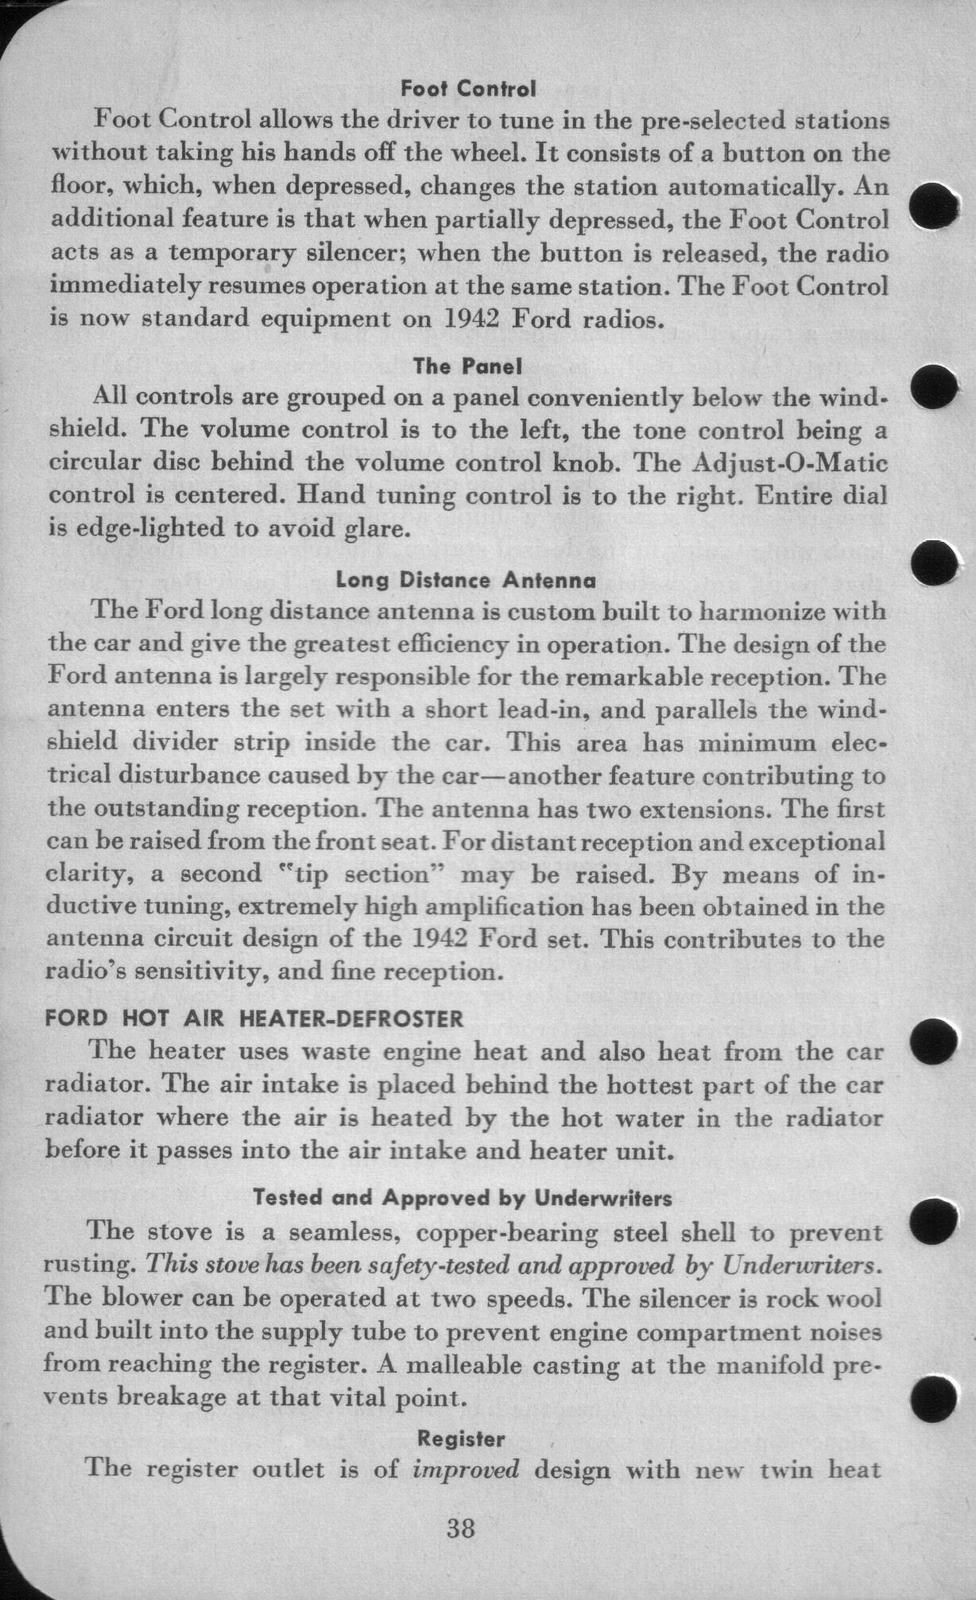 n_1942 Ford Salesmans Reference Manual-038.jpg